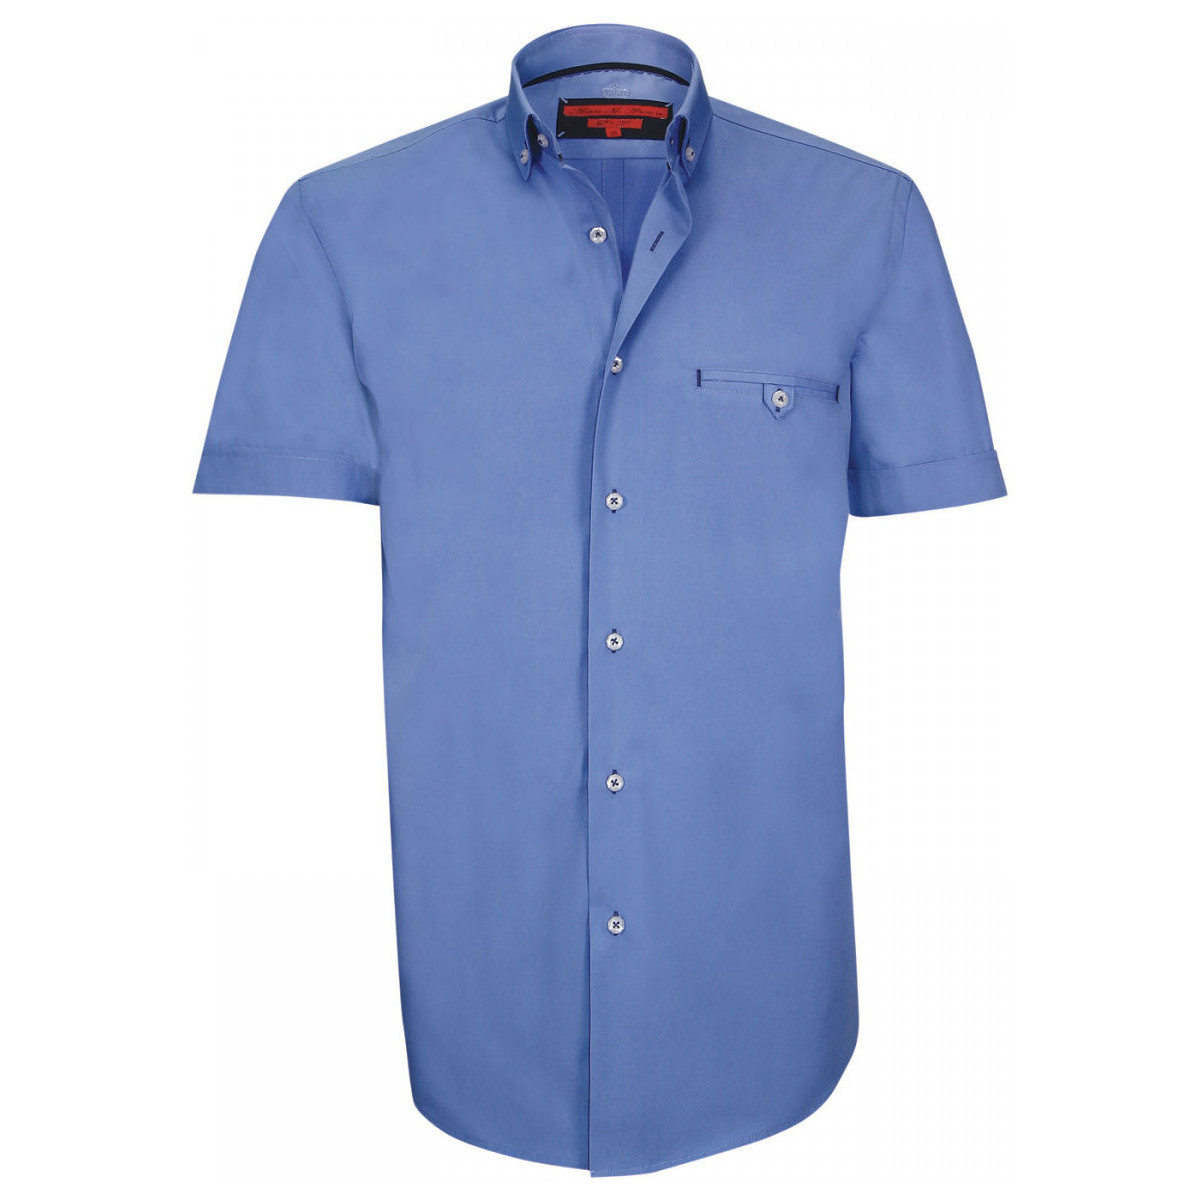 Vêtements Homme Fleur De Safran chemisette mode russel bleu Bleu